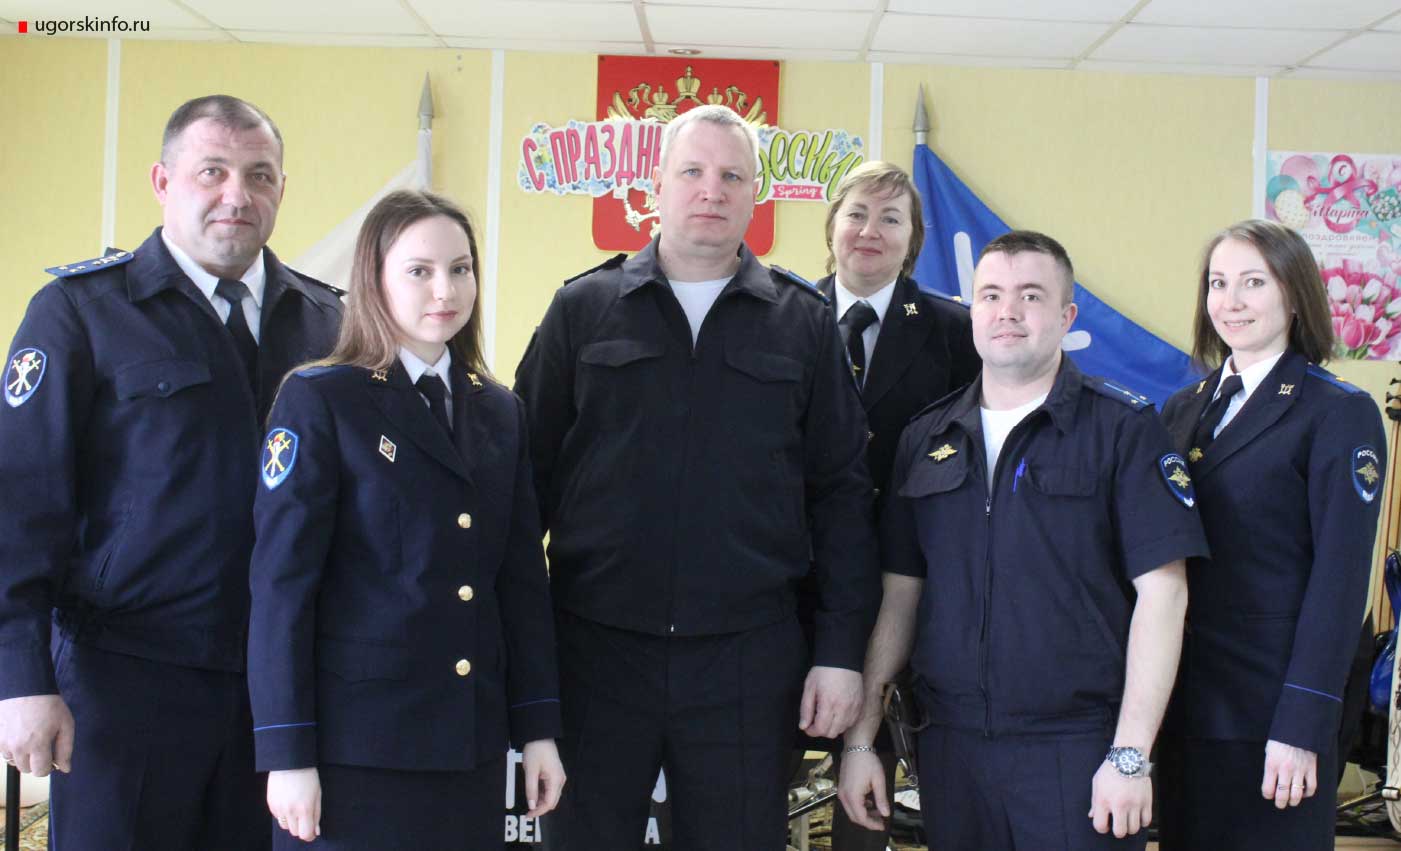 6 апреля в России отметили День работников следственных органов МВД